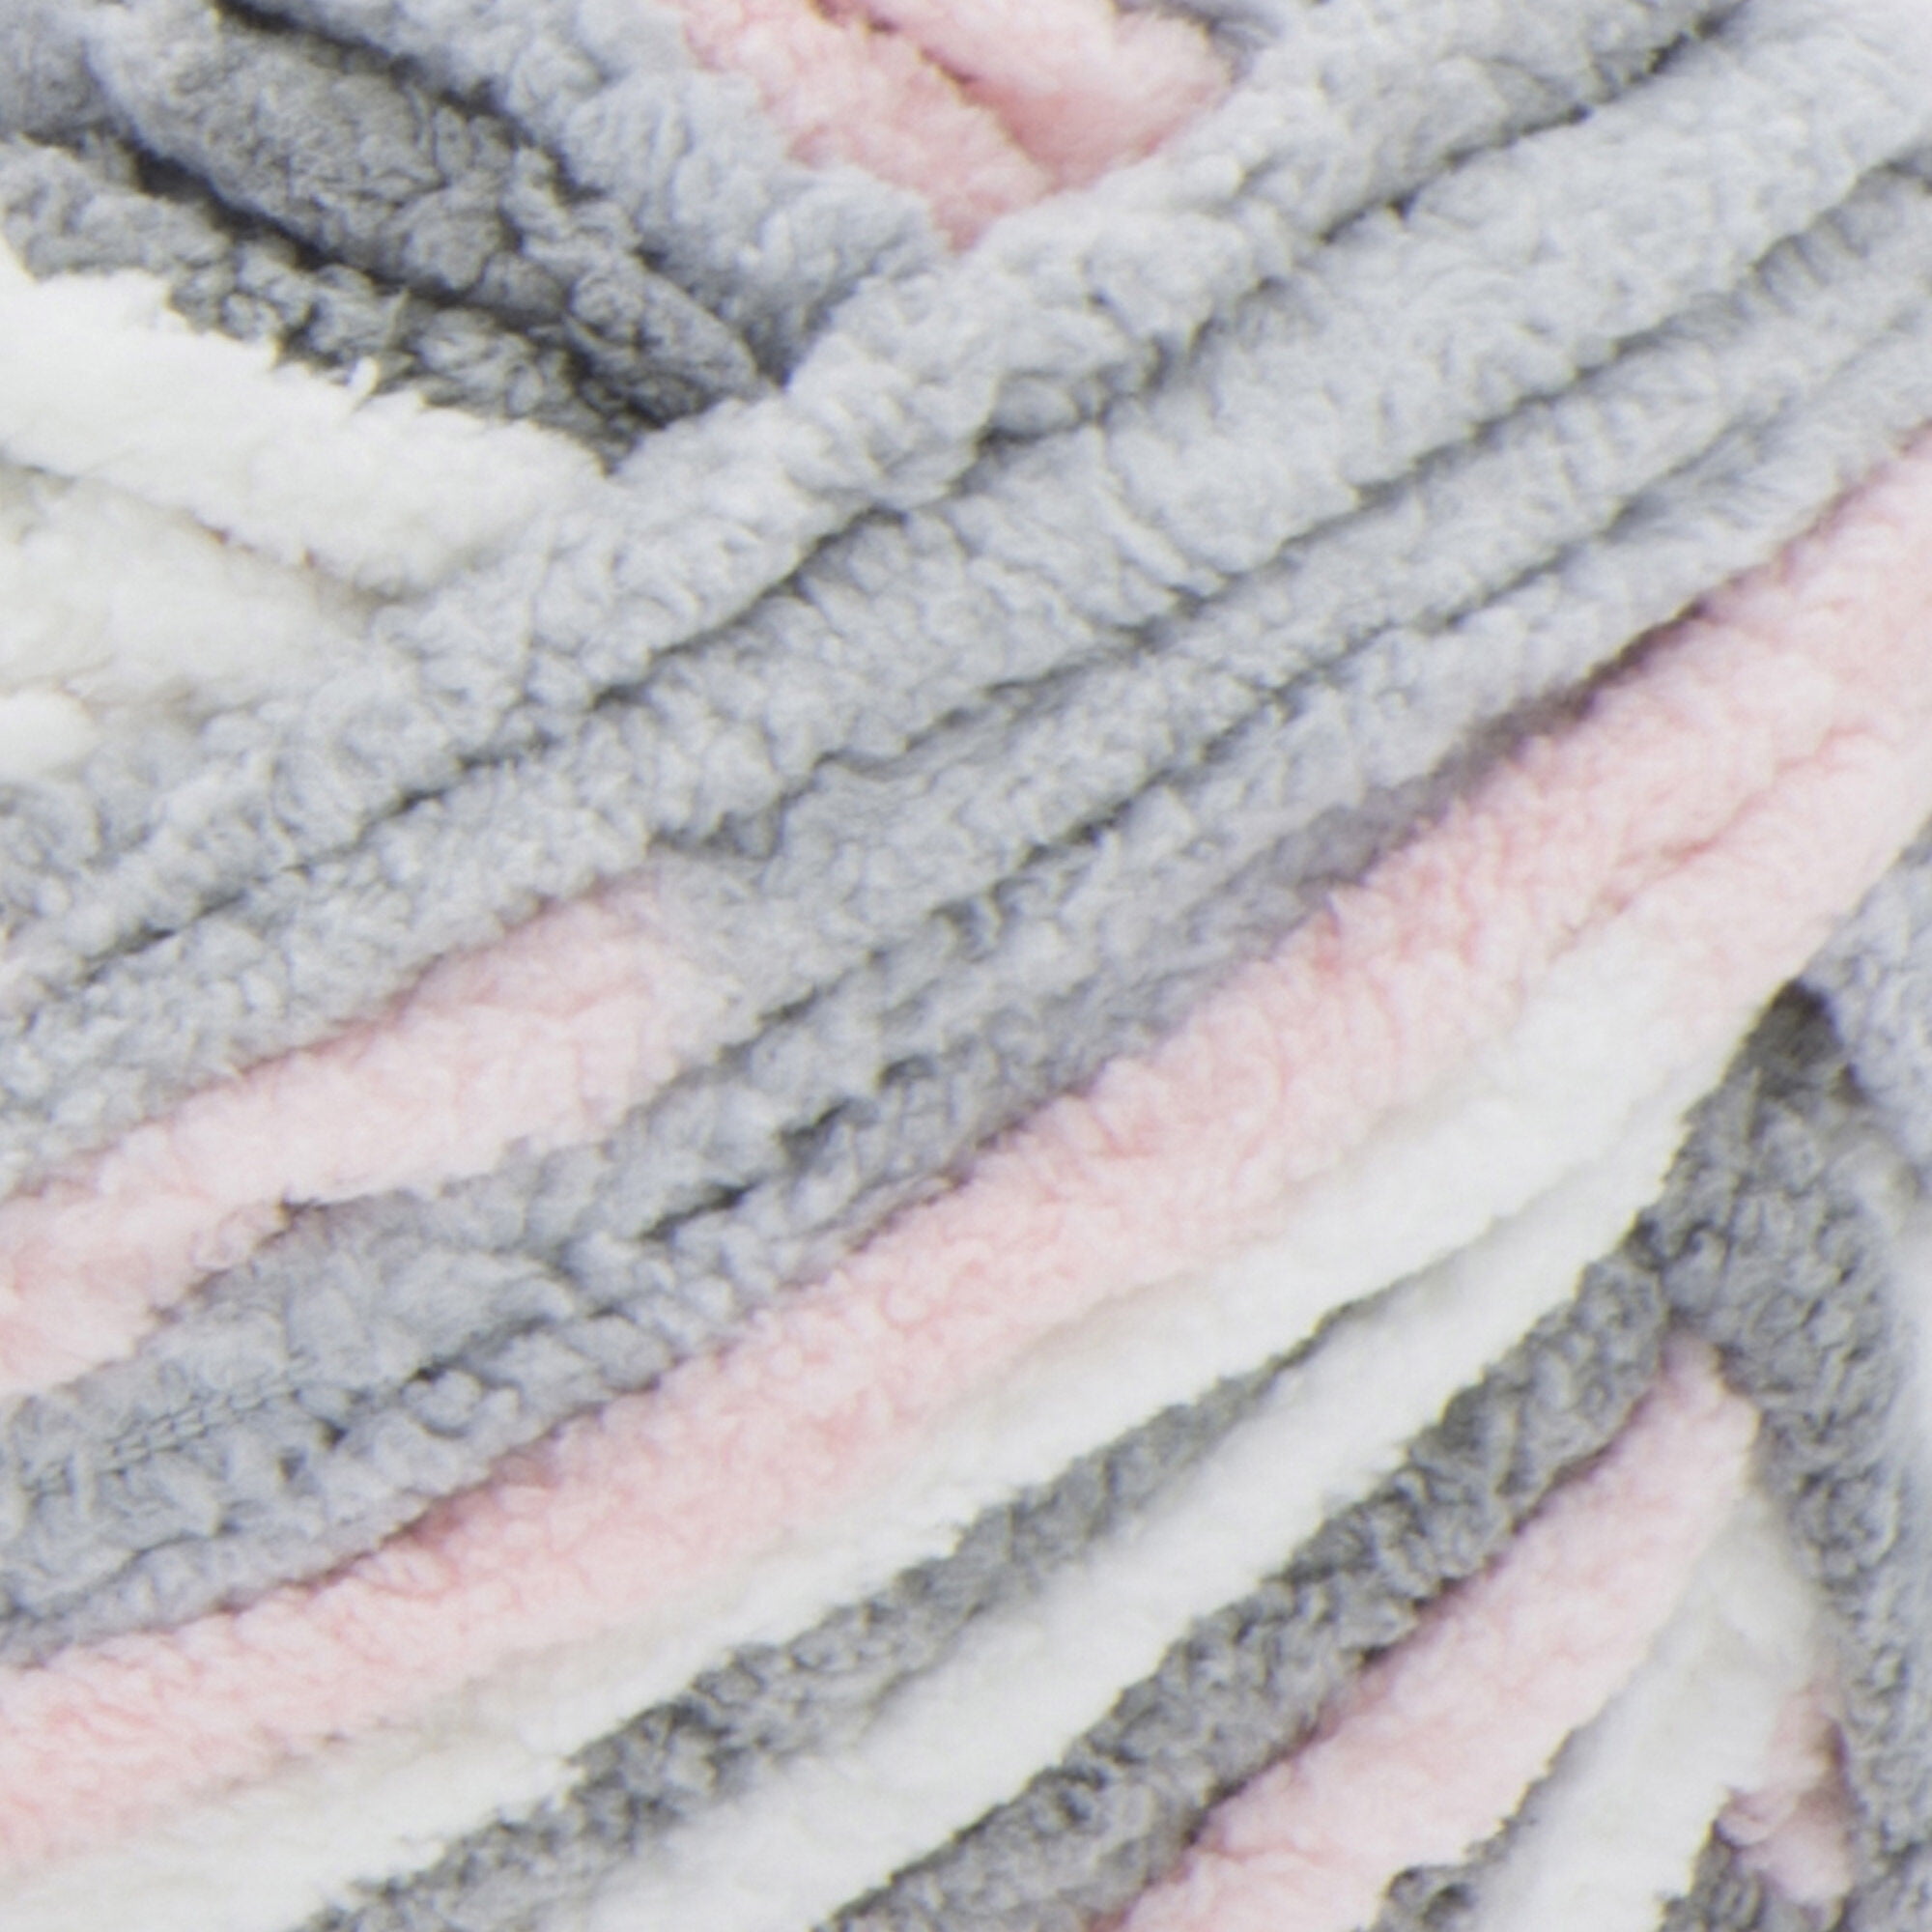 Bernat Baby Blanket Yarn 3.5 Oz Blue/Gray/White 2 Skeins BNWT